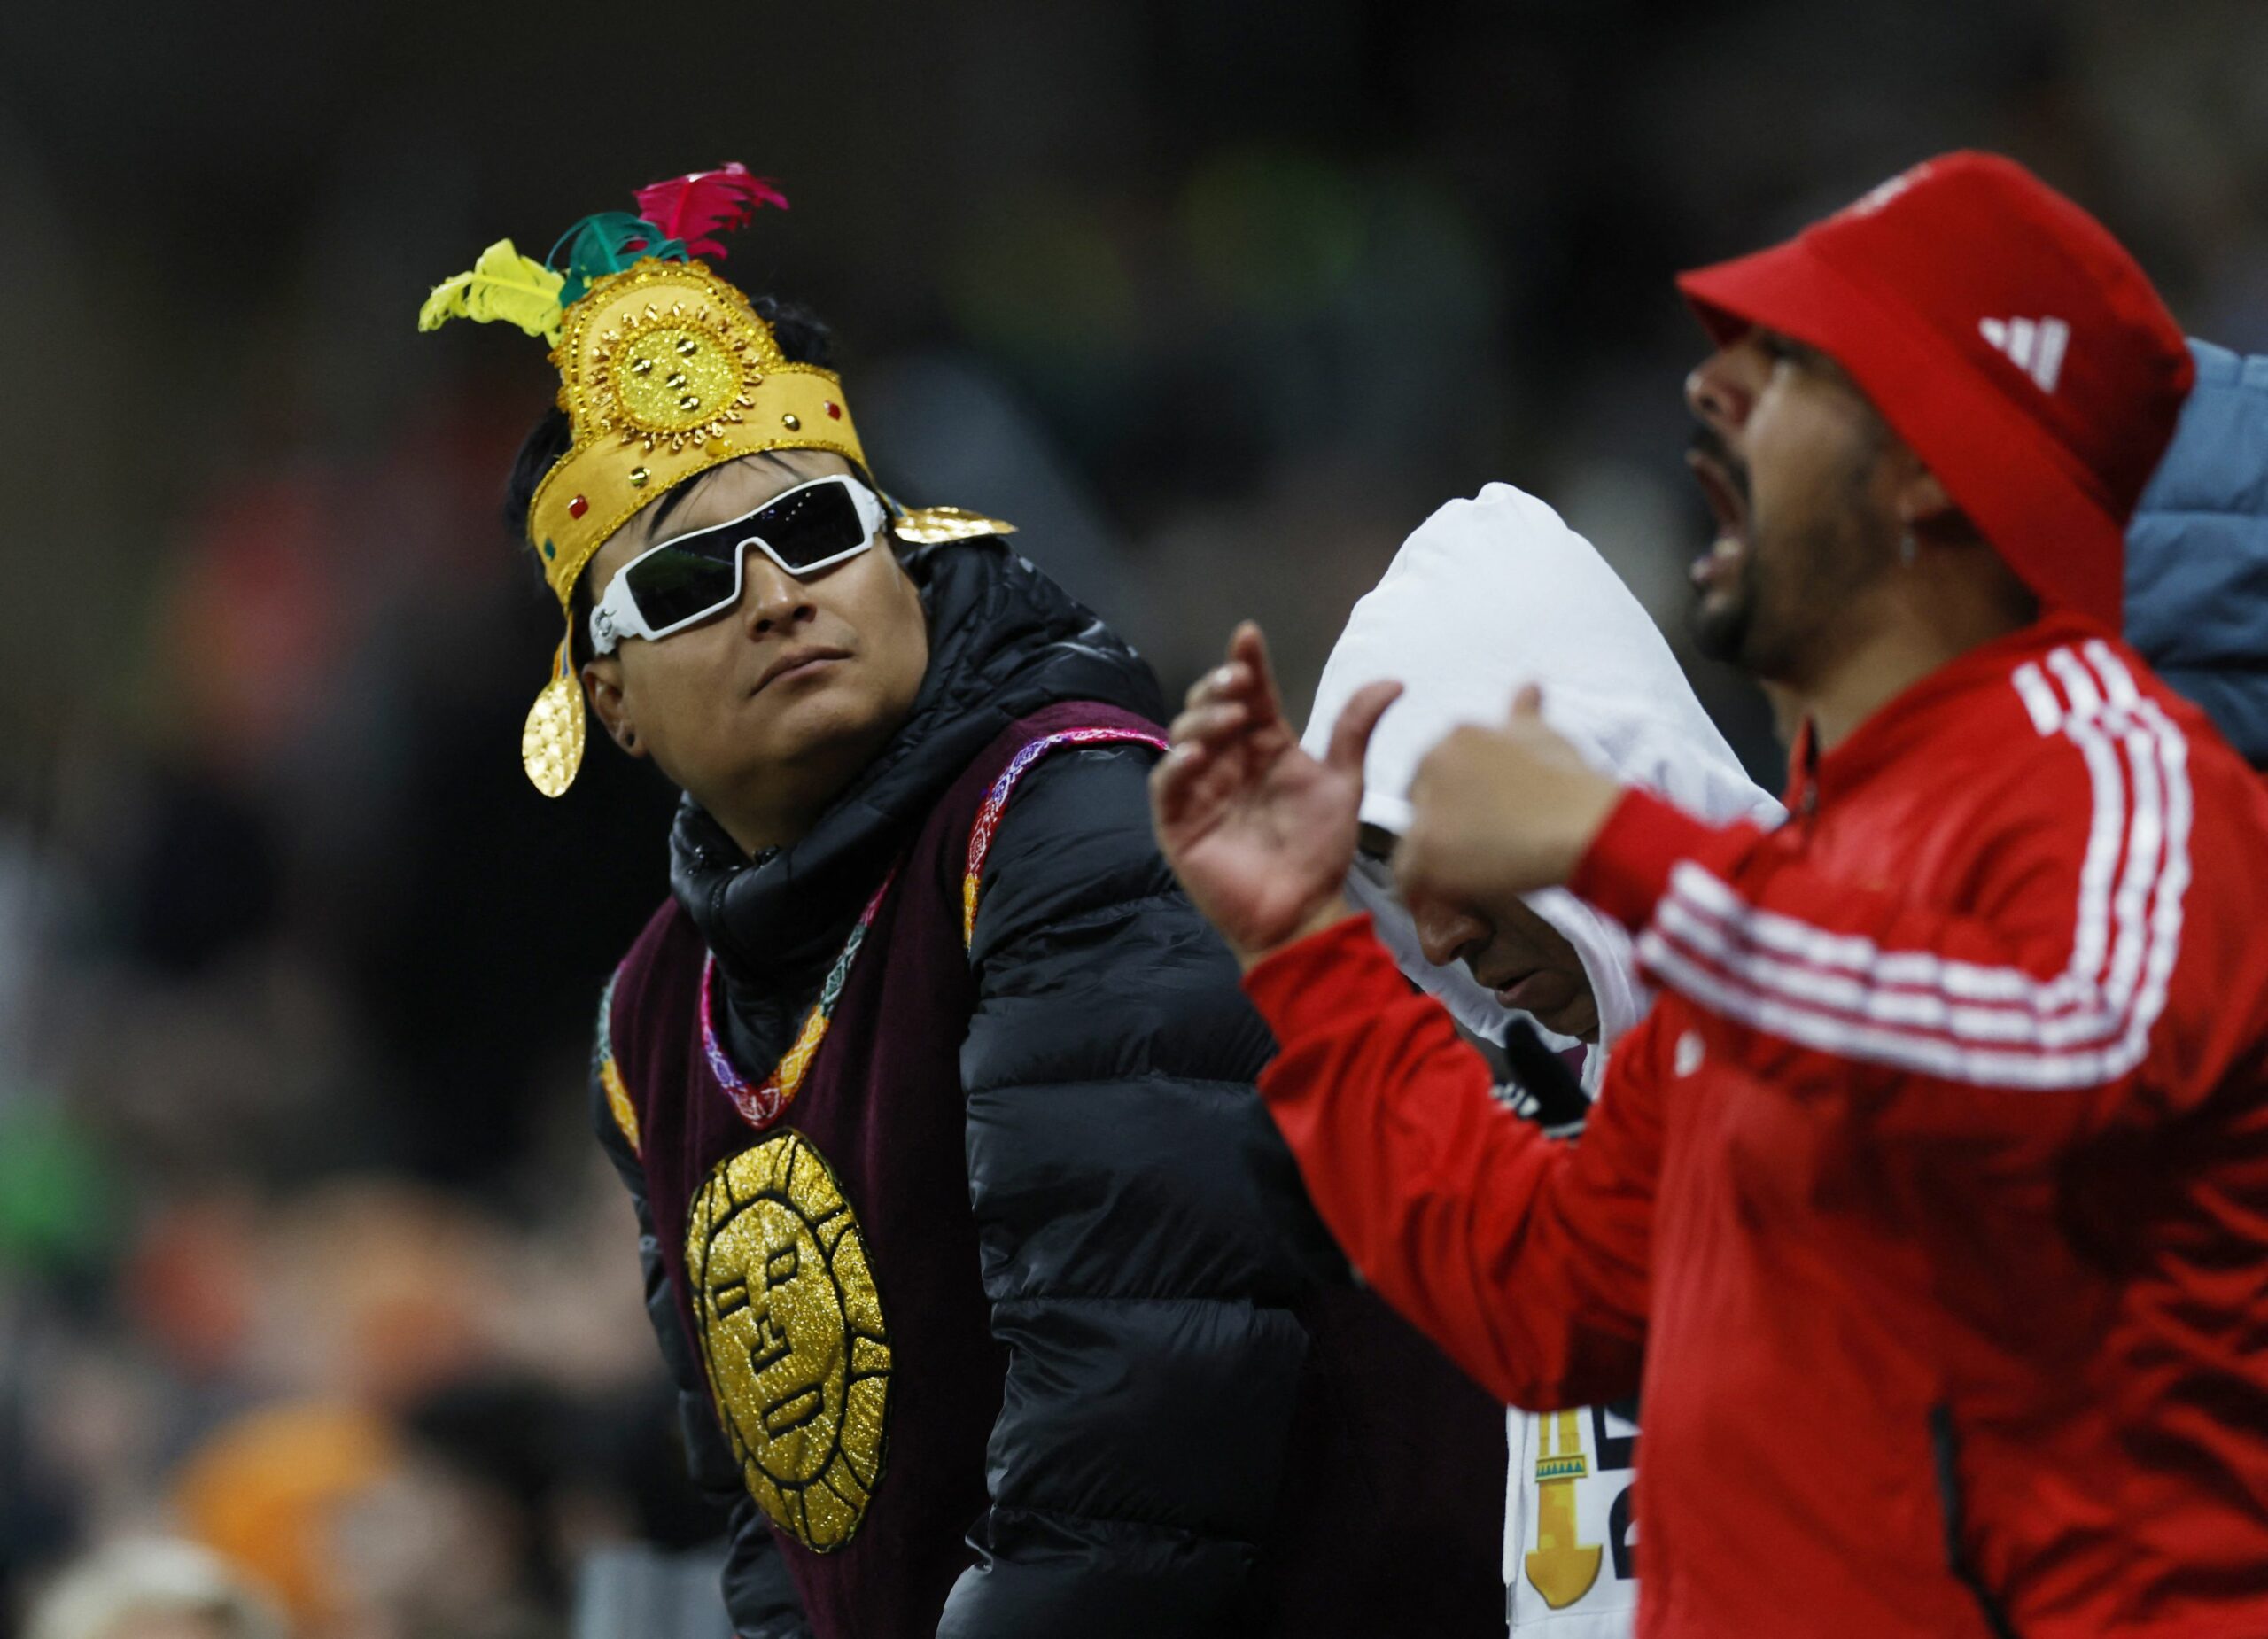 Peruanski navijači/foto REUTERS